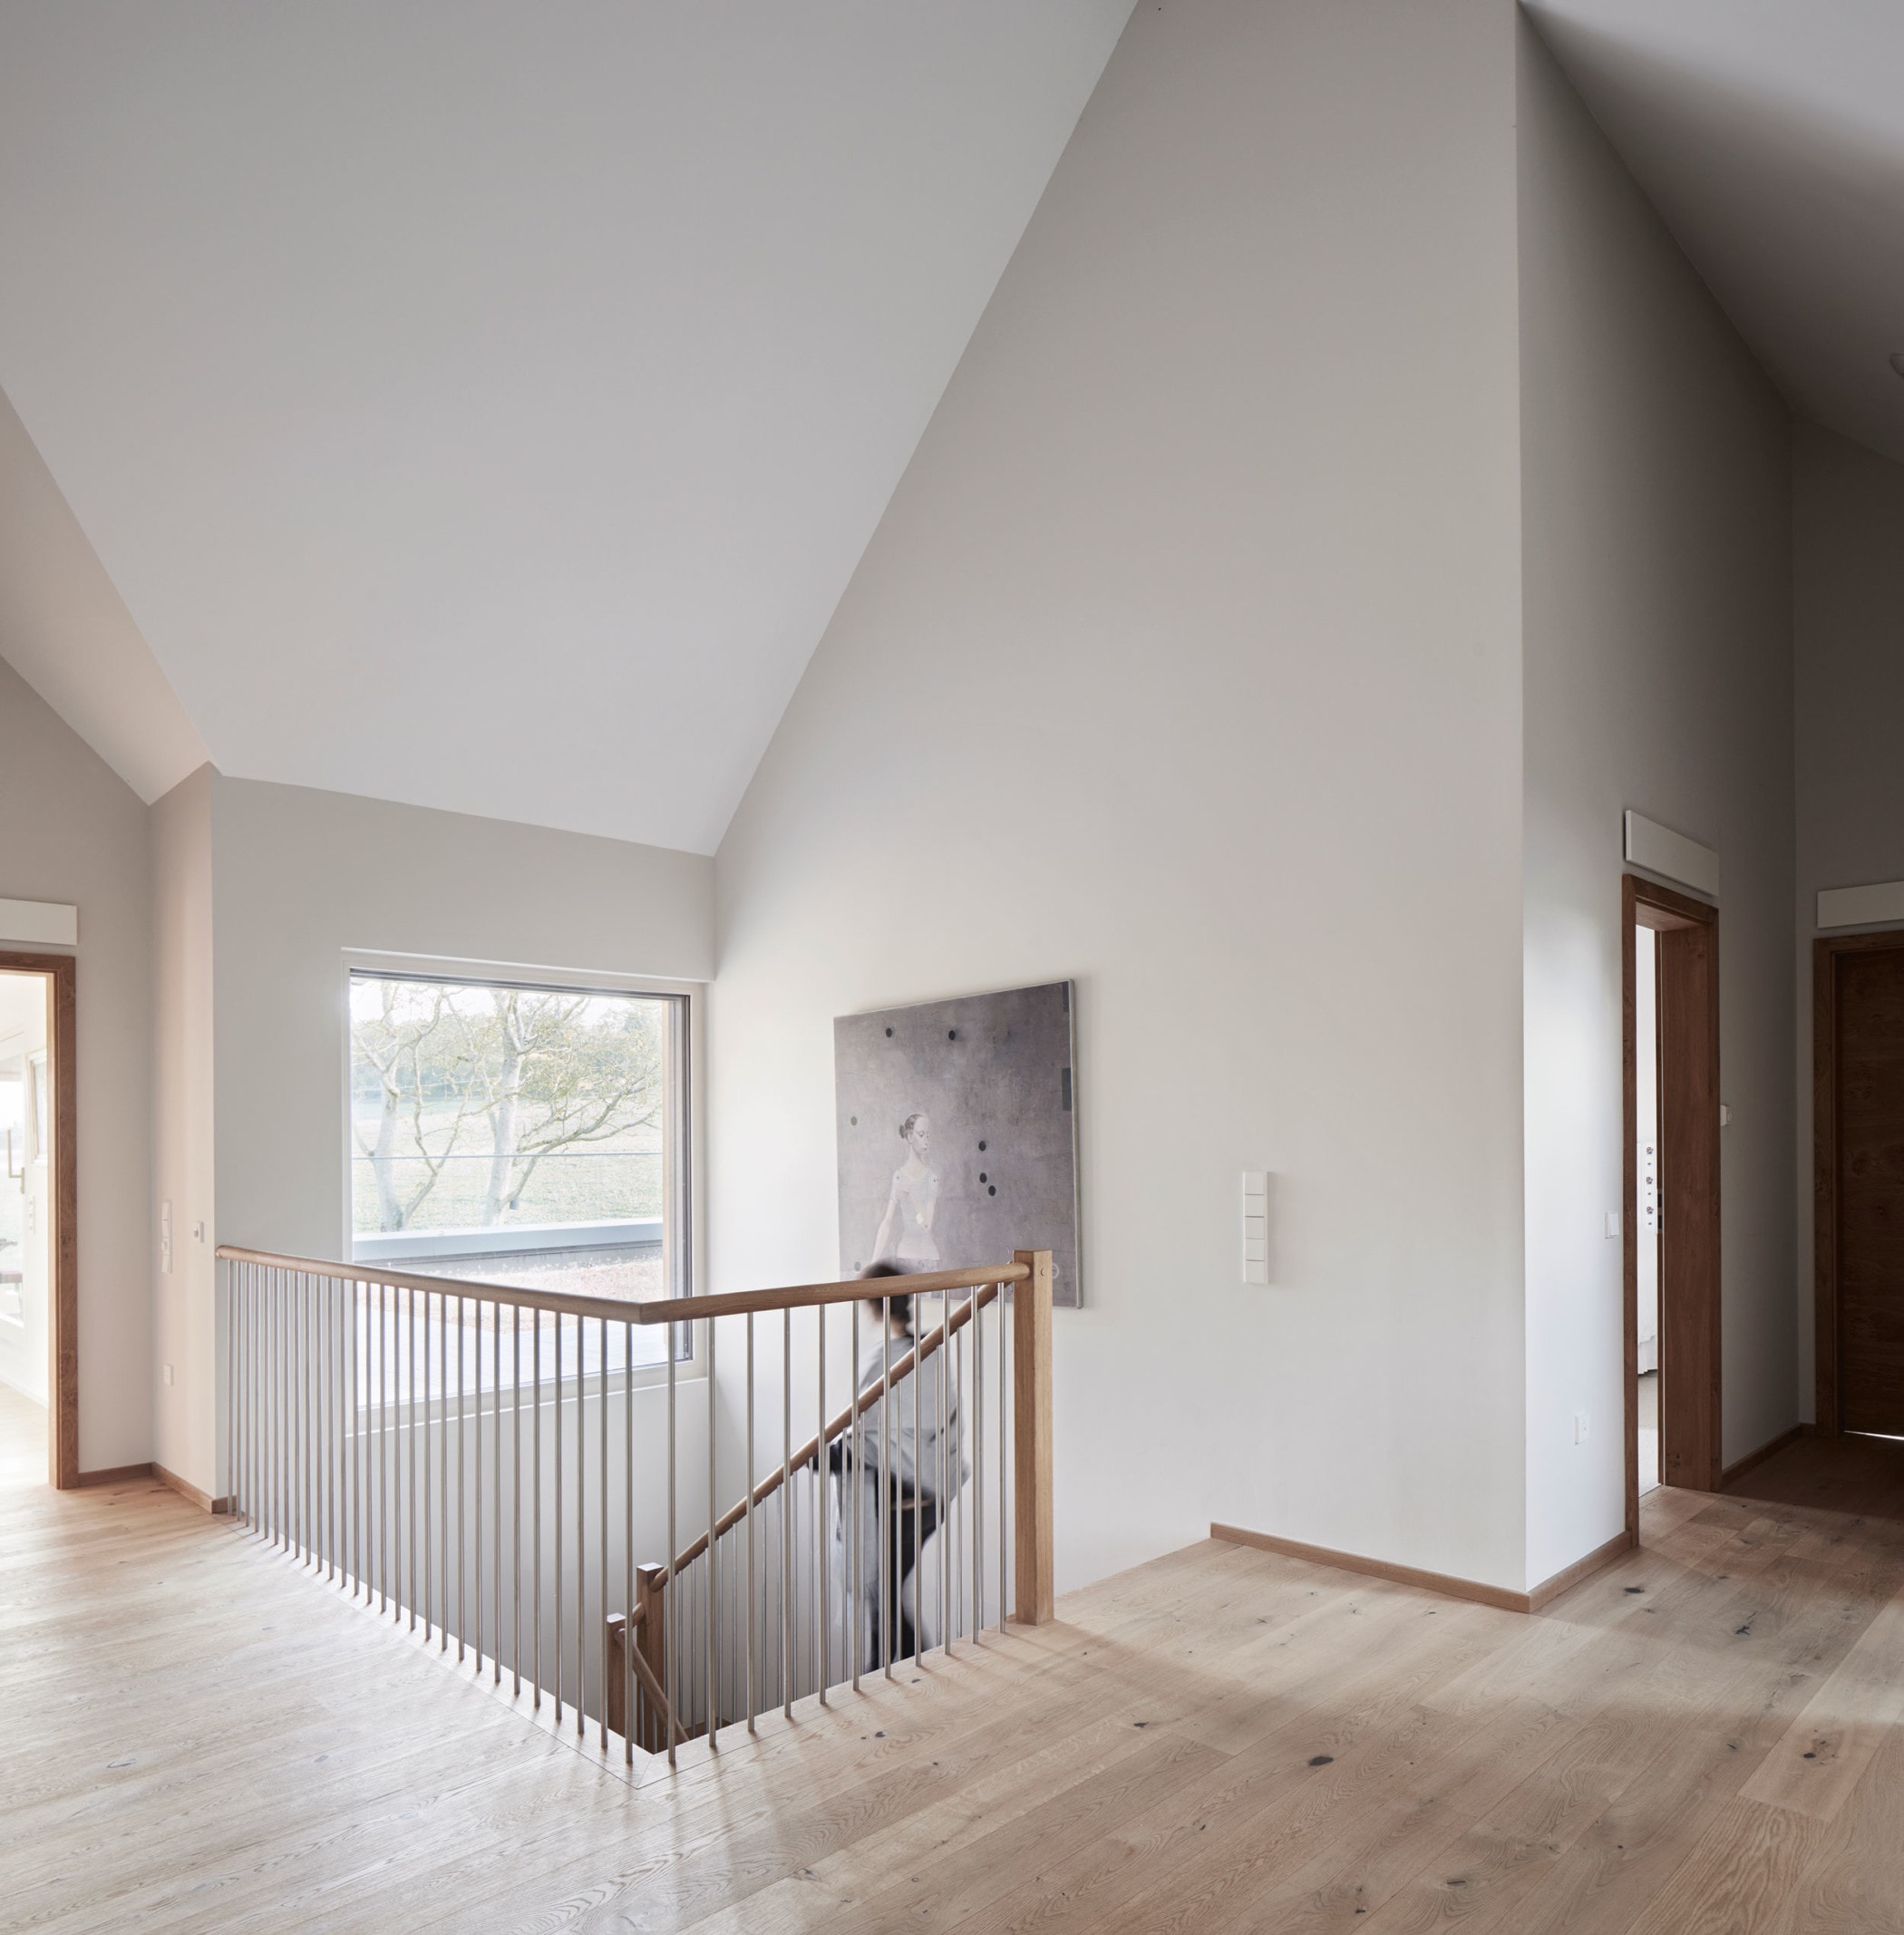 Treppe mit Galerie - Inneneinrichtung Haus Design Ideen innen Baufritz Landhaus LLOYD WEBBER - HausbauDirekt.de